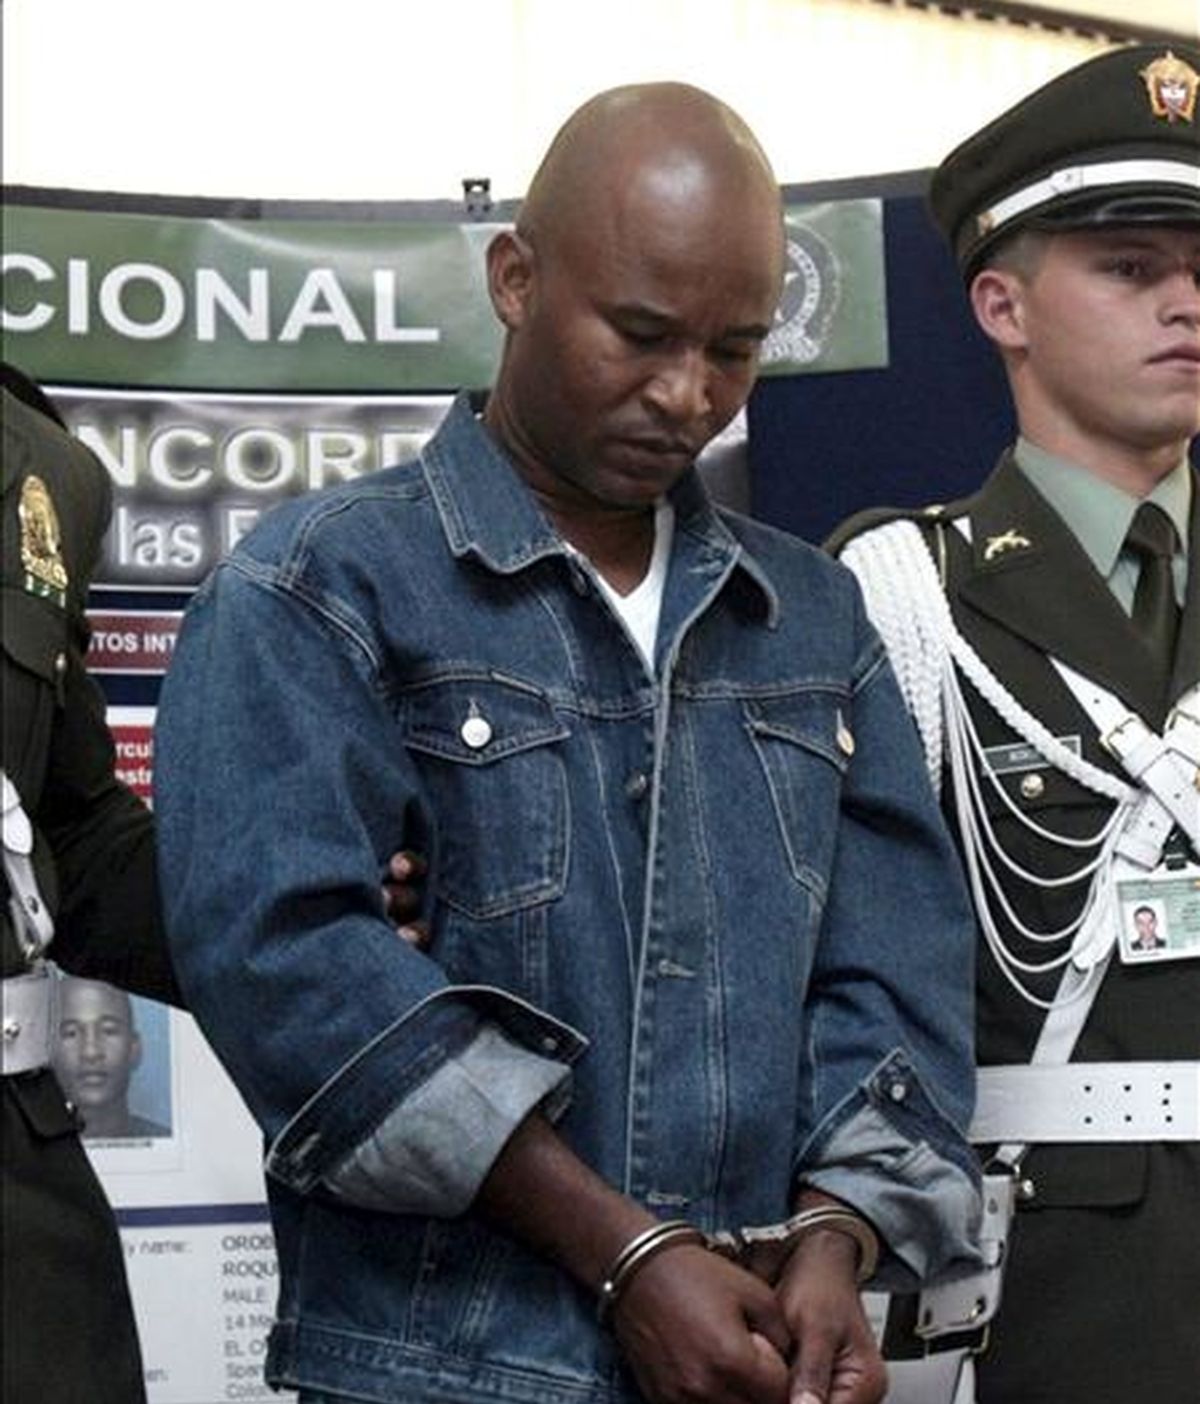 Foto de archivo de Luis Orobio Lobón, miembro de las Fuerzas Armadas Revolucionarias de Colombia (FARC), que fue extraditado a Estados Unidos, donde se le acusa de participar en el secuestro de un ciudadano estadounidense en Panamá. EFE/Archivo